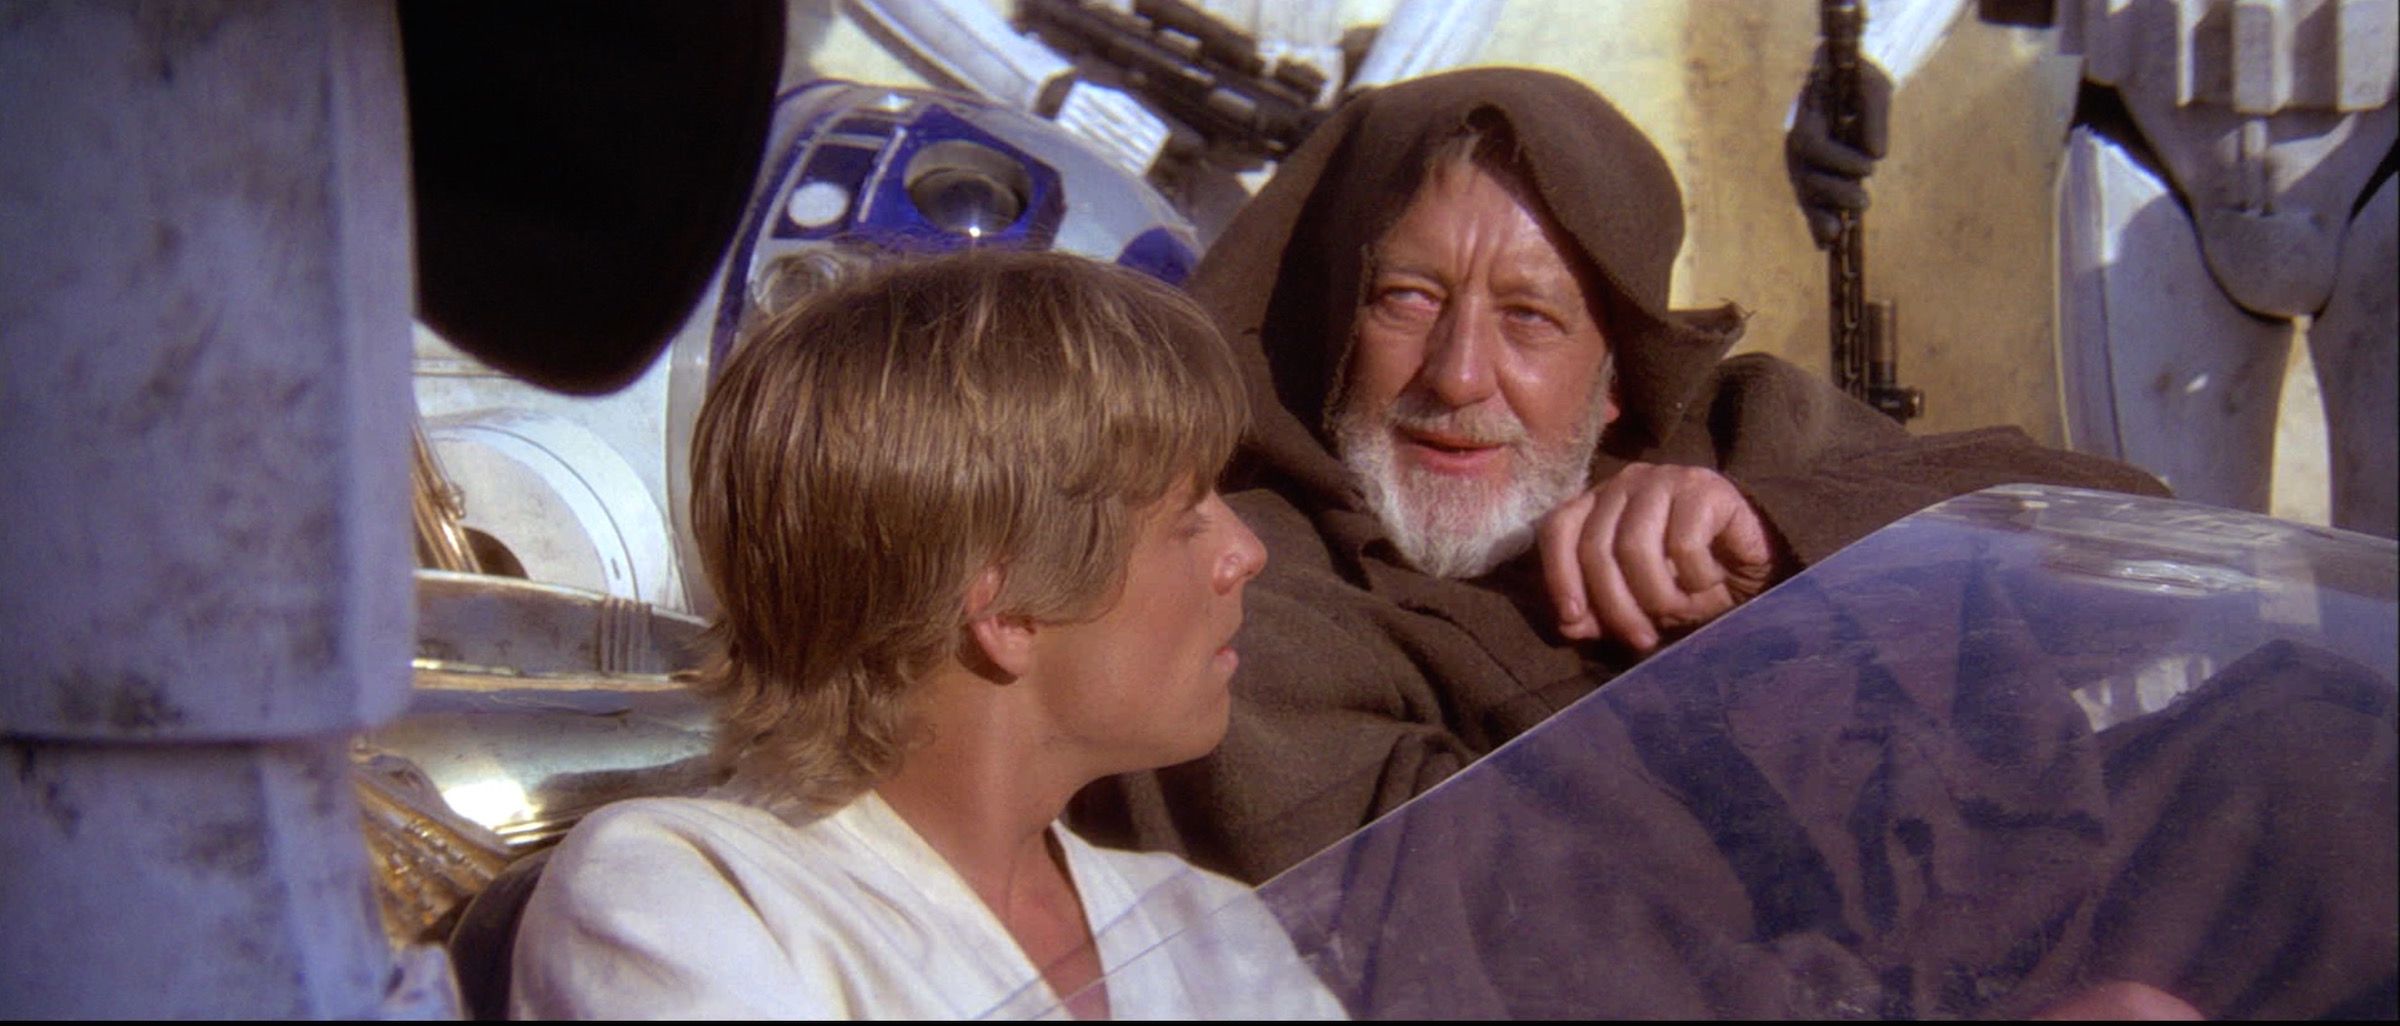 Obi Wan and Luke